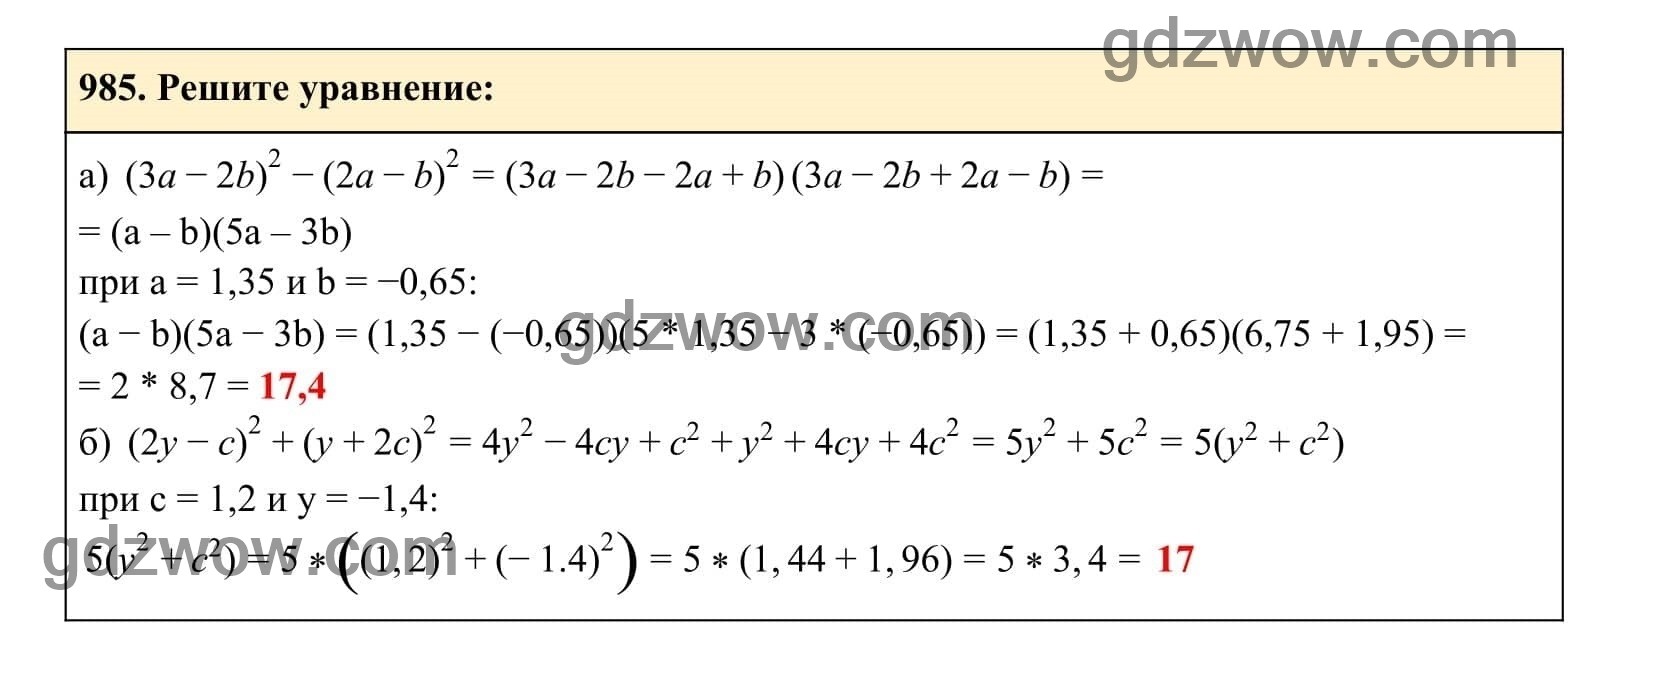 Упражнение 985 - ГДЗ по Алгебре 7 класс Учебник Макарычев (решебник) - GDZwow